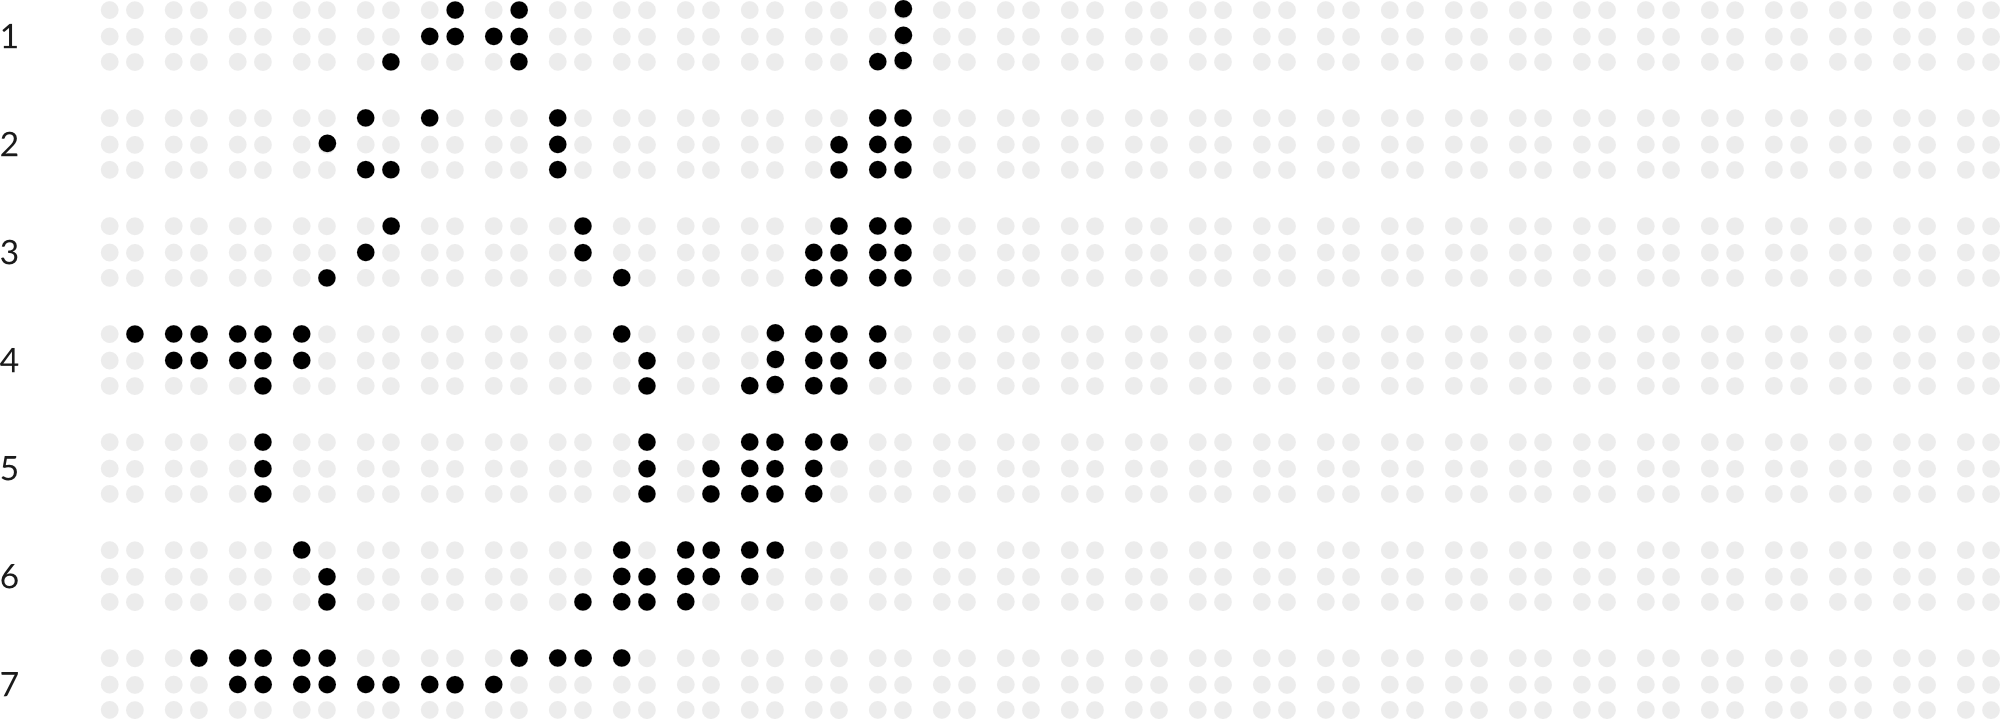 Braillebild mit Raster: Eichhörnchen